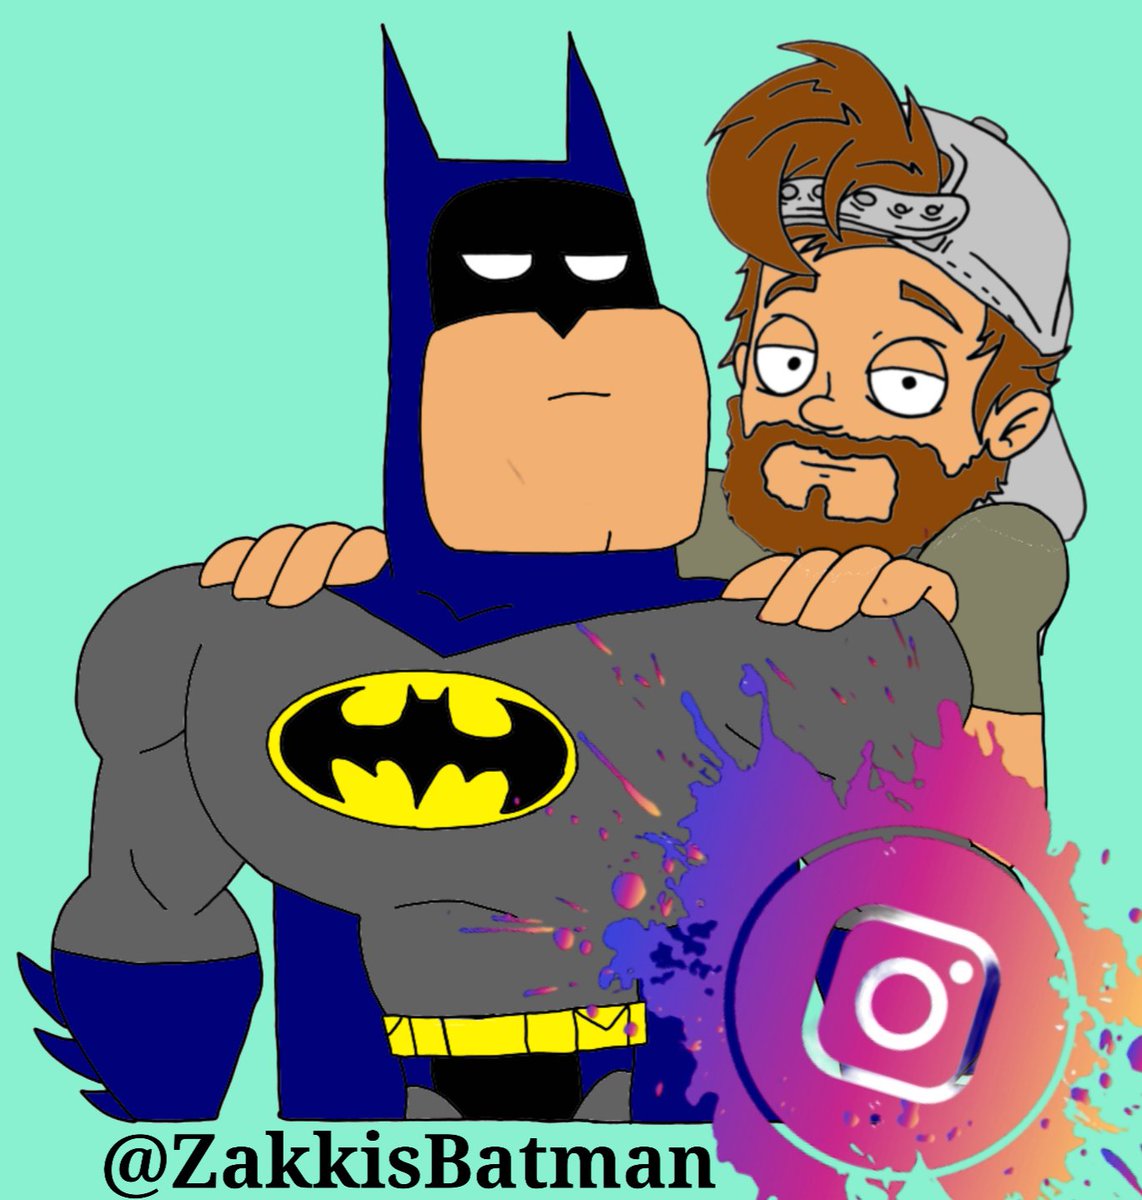 Follow me on #Instagram at ZakkisBatman 

#batman #BatmanArkhamKnight #DCStudios #dccomics #dcuniverse #MarvelStudios #AntManAndTheWaspID #AntMan